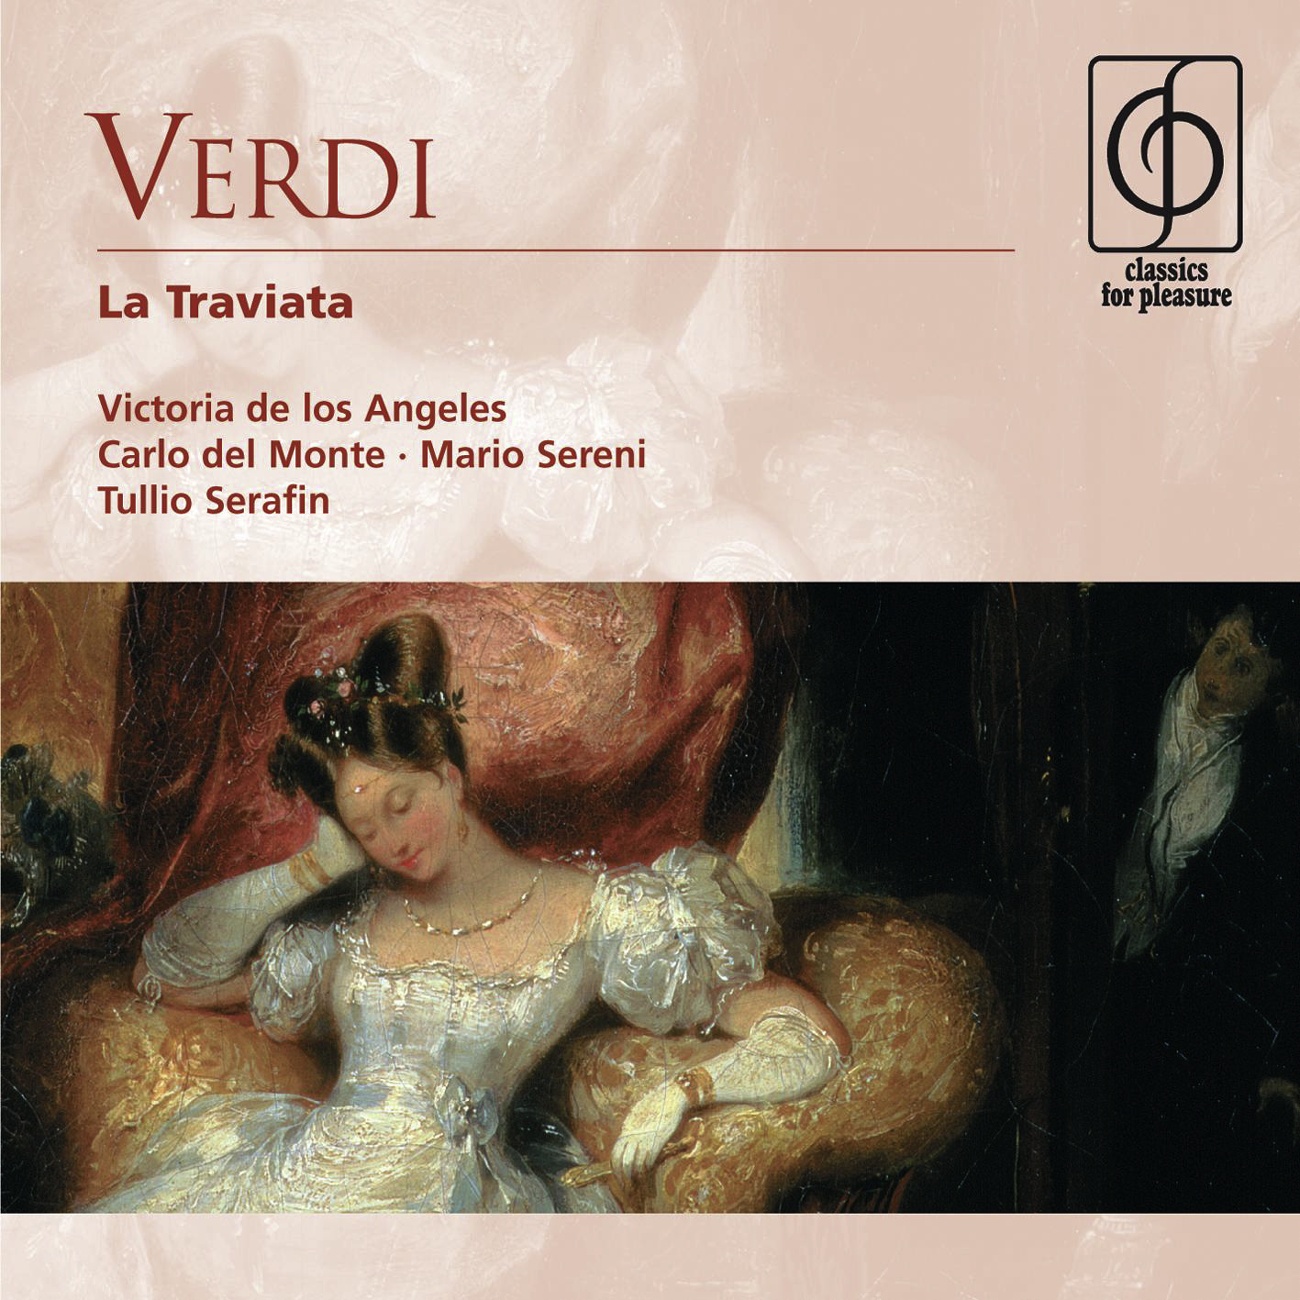 La Traviata ' appendix' with missing tracks from Serafin 1992 drm 1992 Digital Remaster: Follie! follie! Delirio vano e questo! Violetta